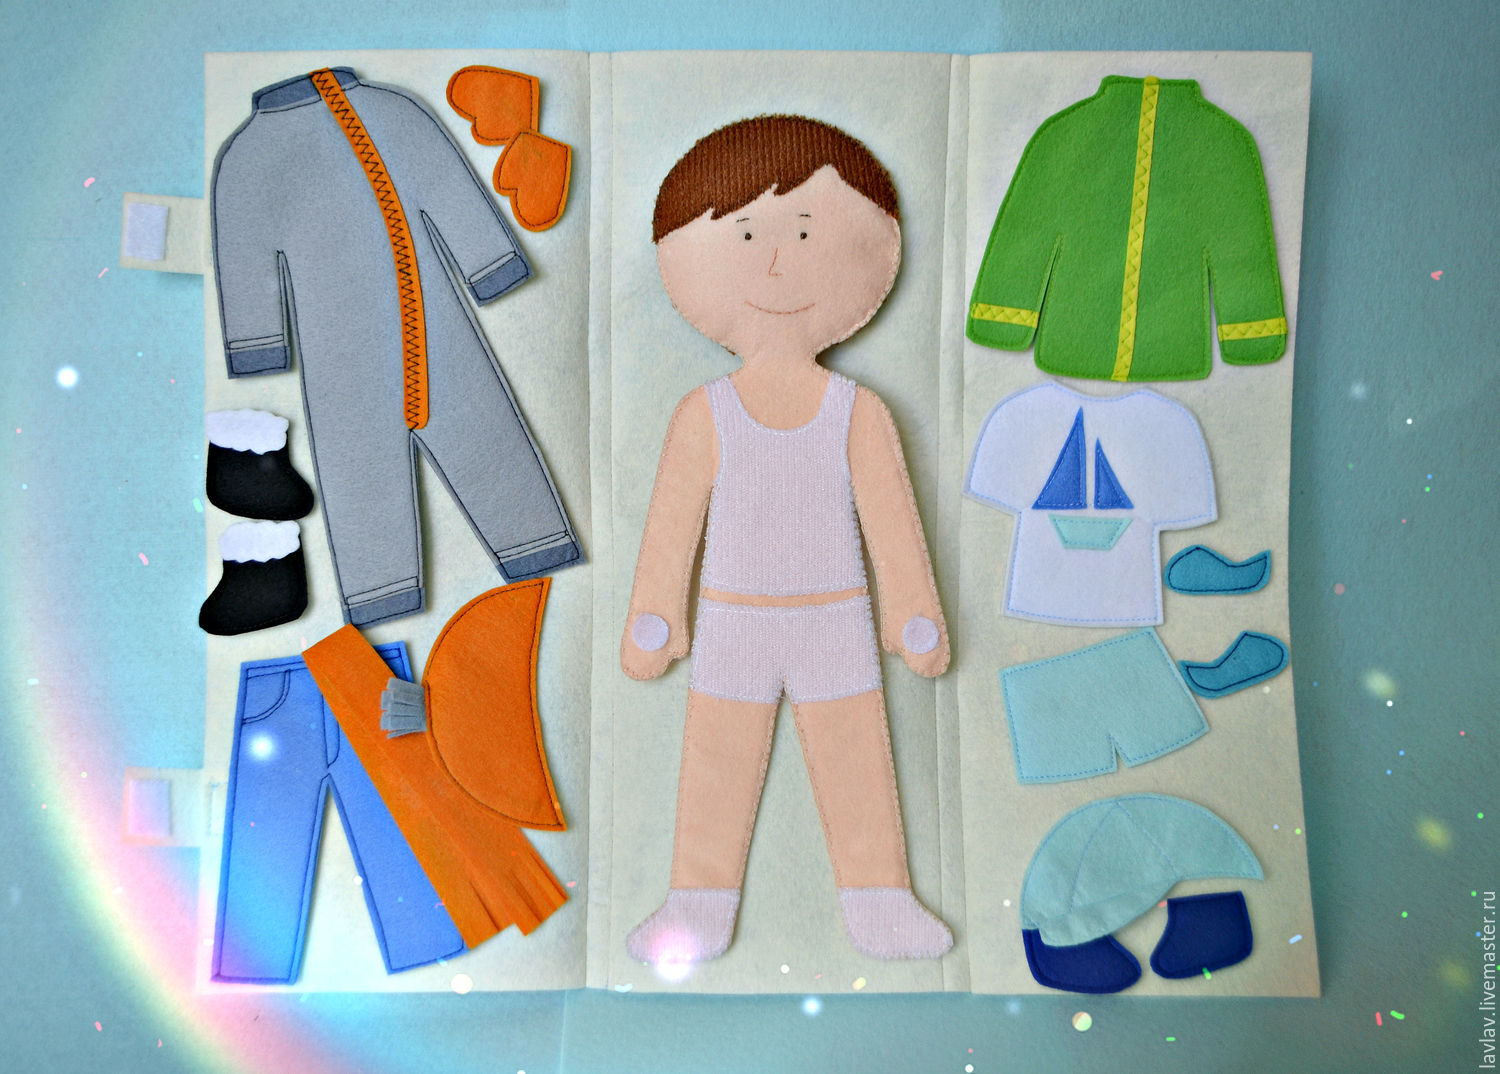 Игра оденем куклу на прогулку. Картонные куклы с одеждой. Одежда для кукол. Бумажные куклы с одеждой. Бумажный ребенок с одеждой.